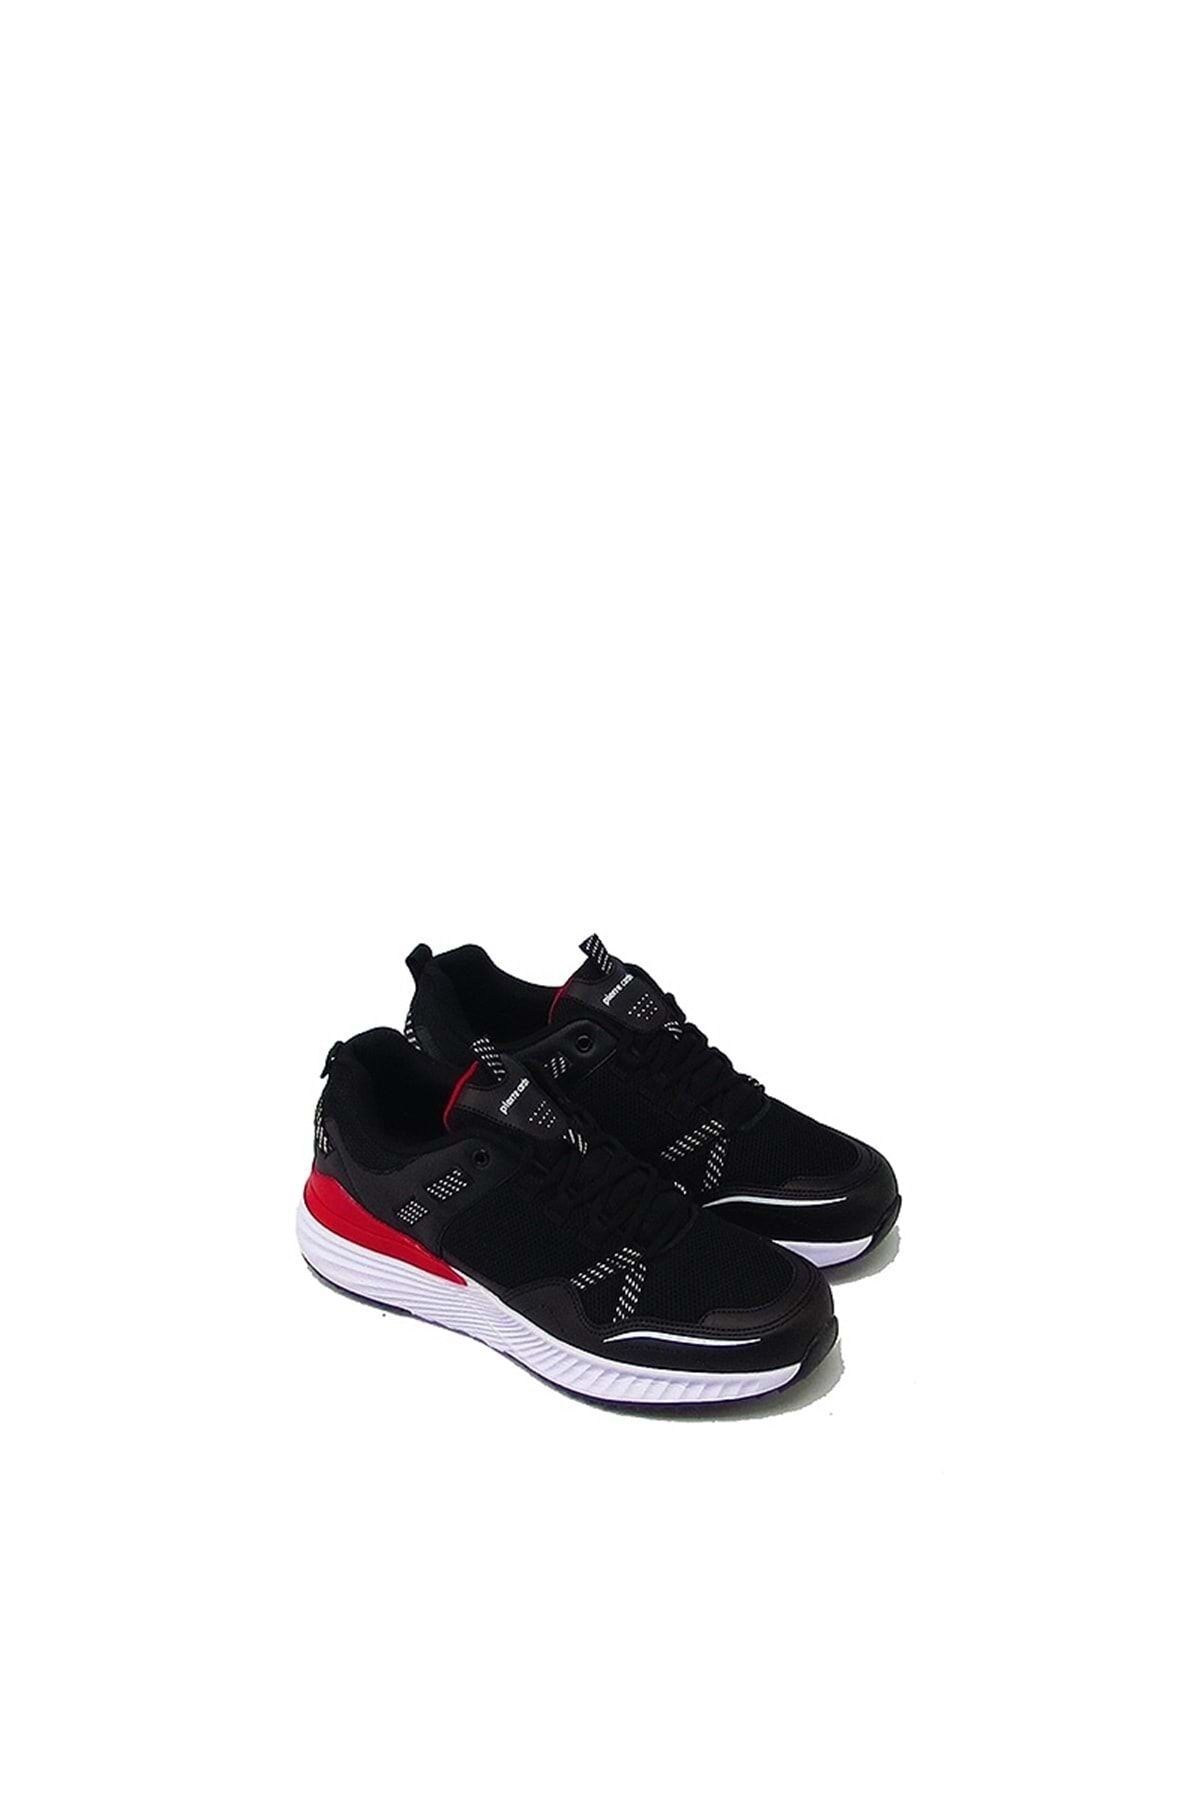 Pierre Cardin Pc-31100 Siyah Erkek Yüksek Taban Bağlı Spor Ayakkabı